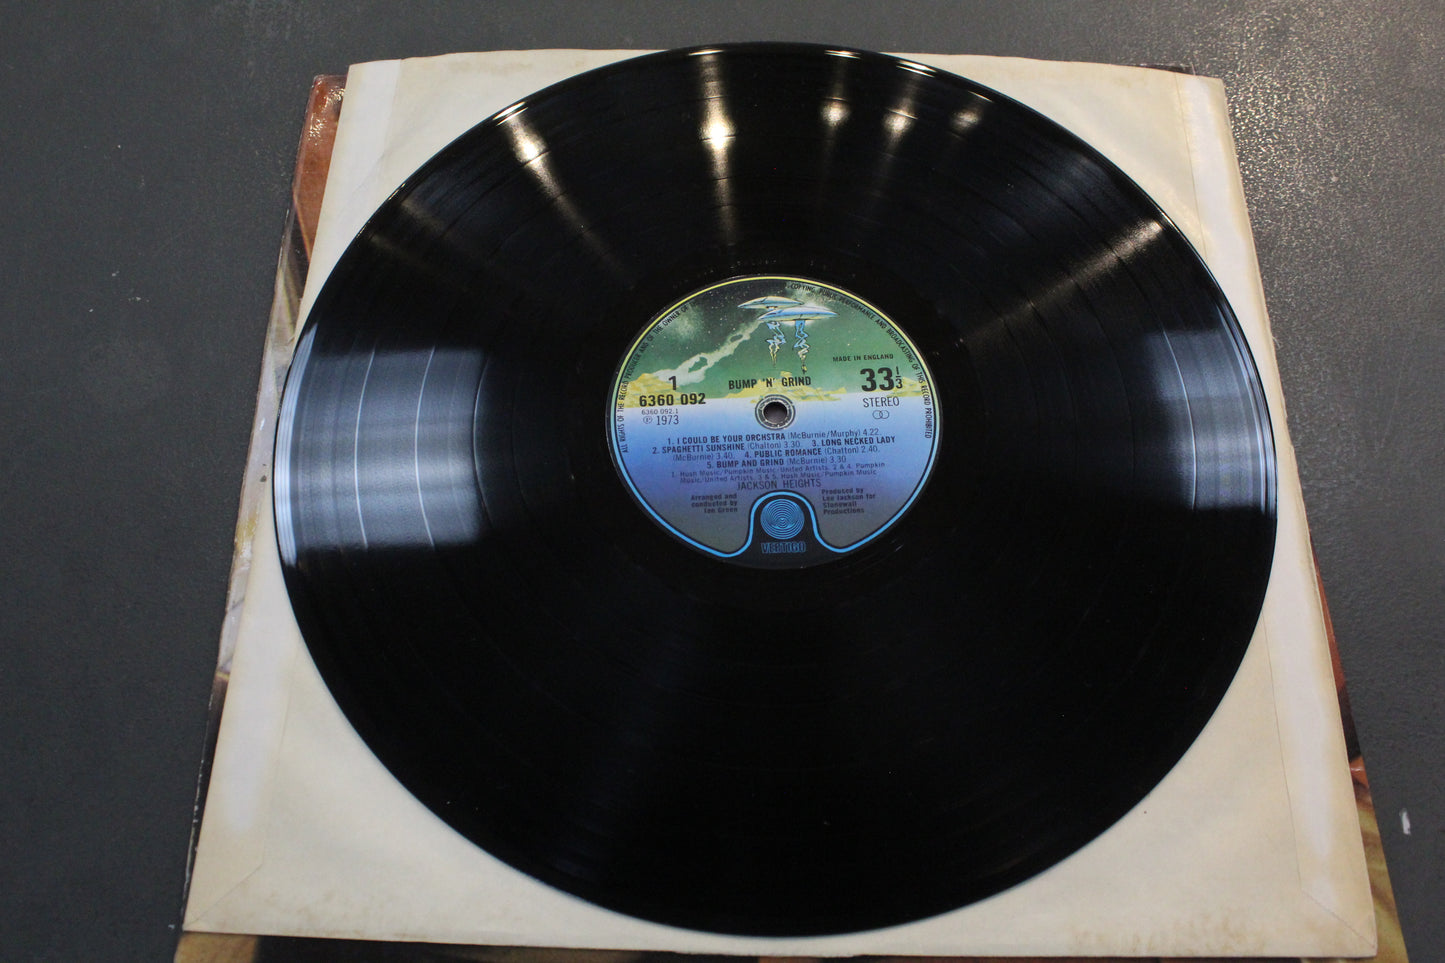 Jackson Heights Bump n Grind Vinyl record (NM)